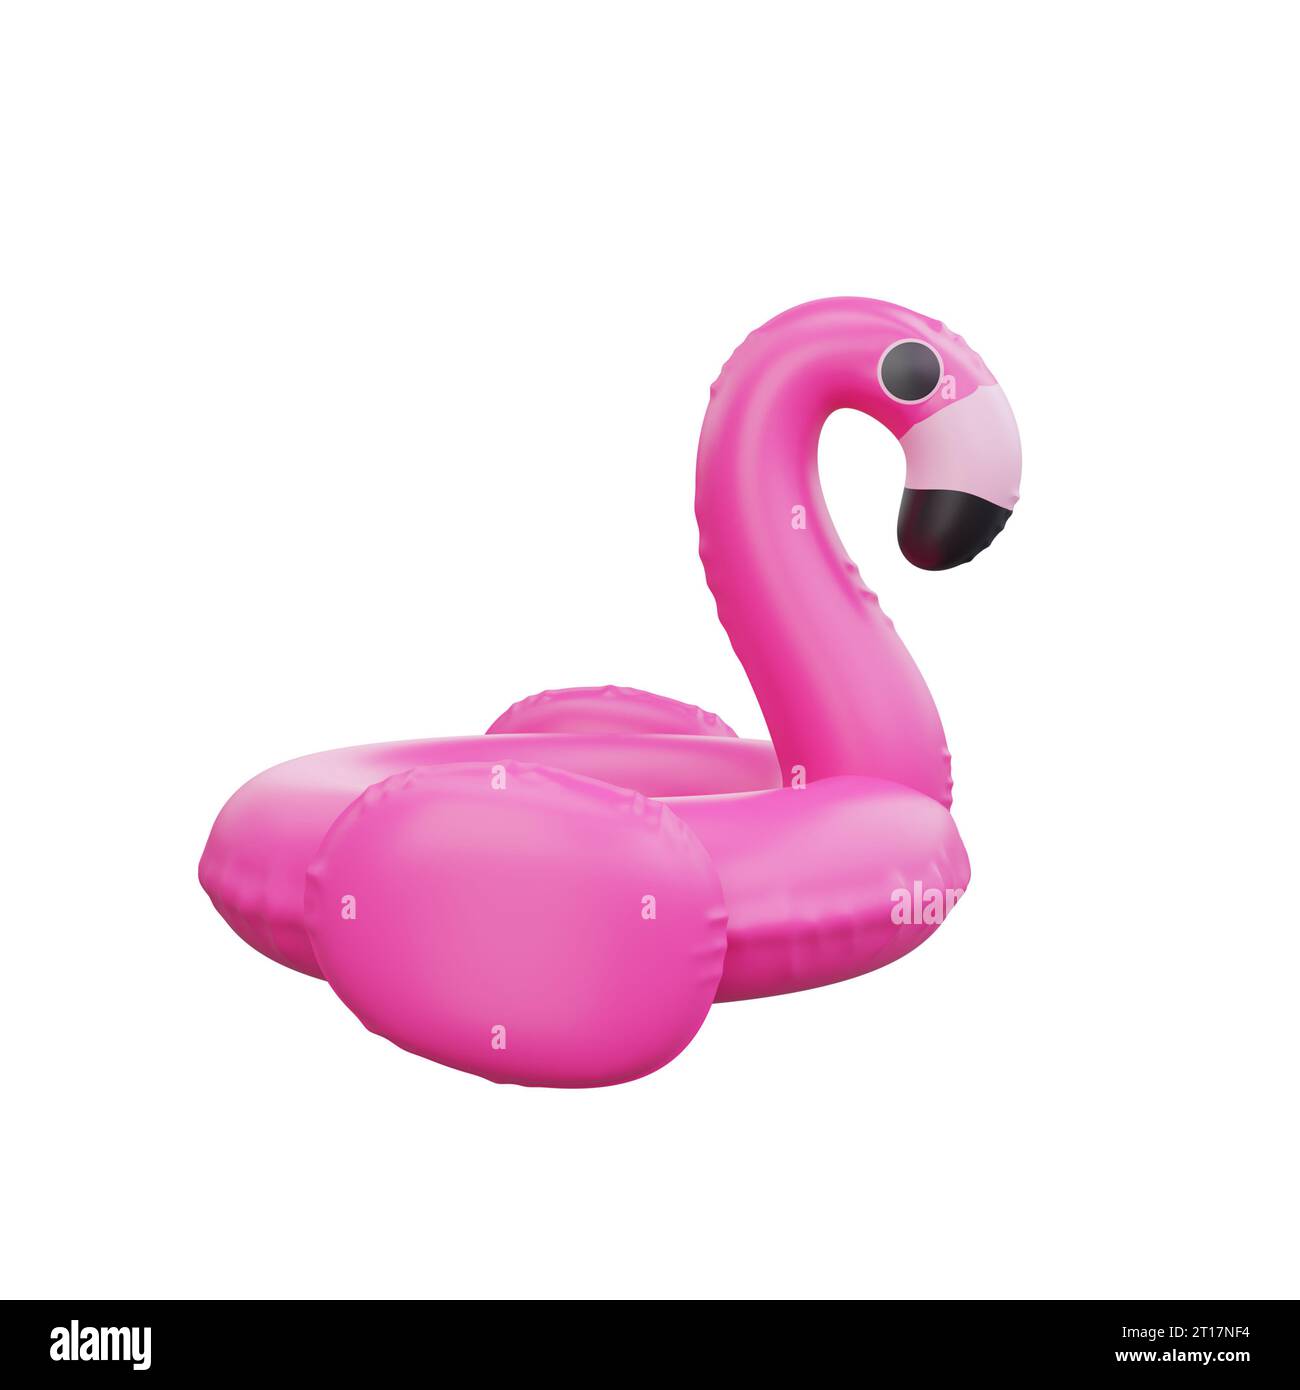 Rendu 3D d'un flotteur de piscine gonflable ludique rose flamant, symbolisant le plaisir et la détente de l'été Banque D'Images